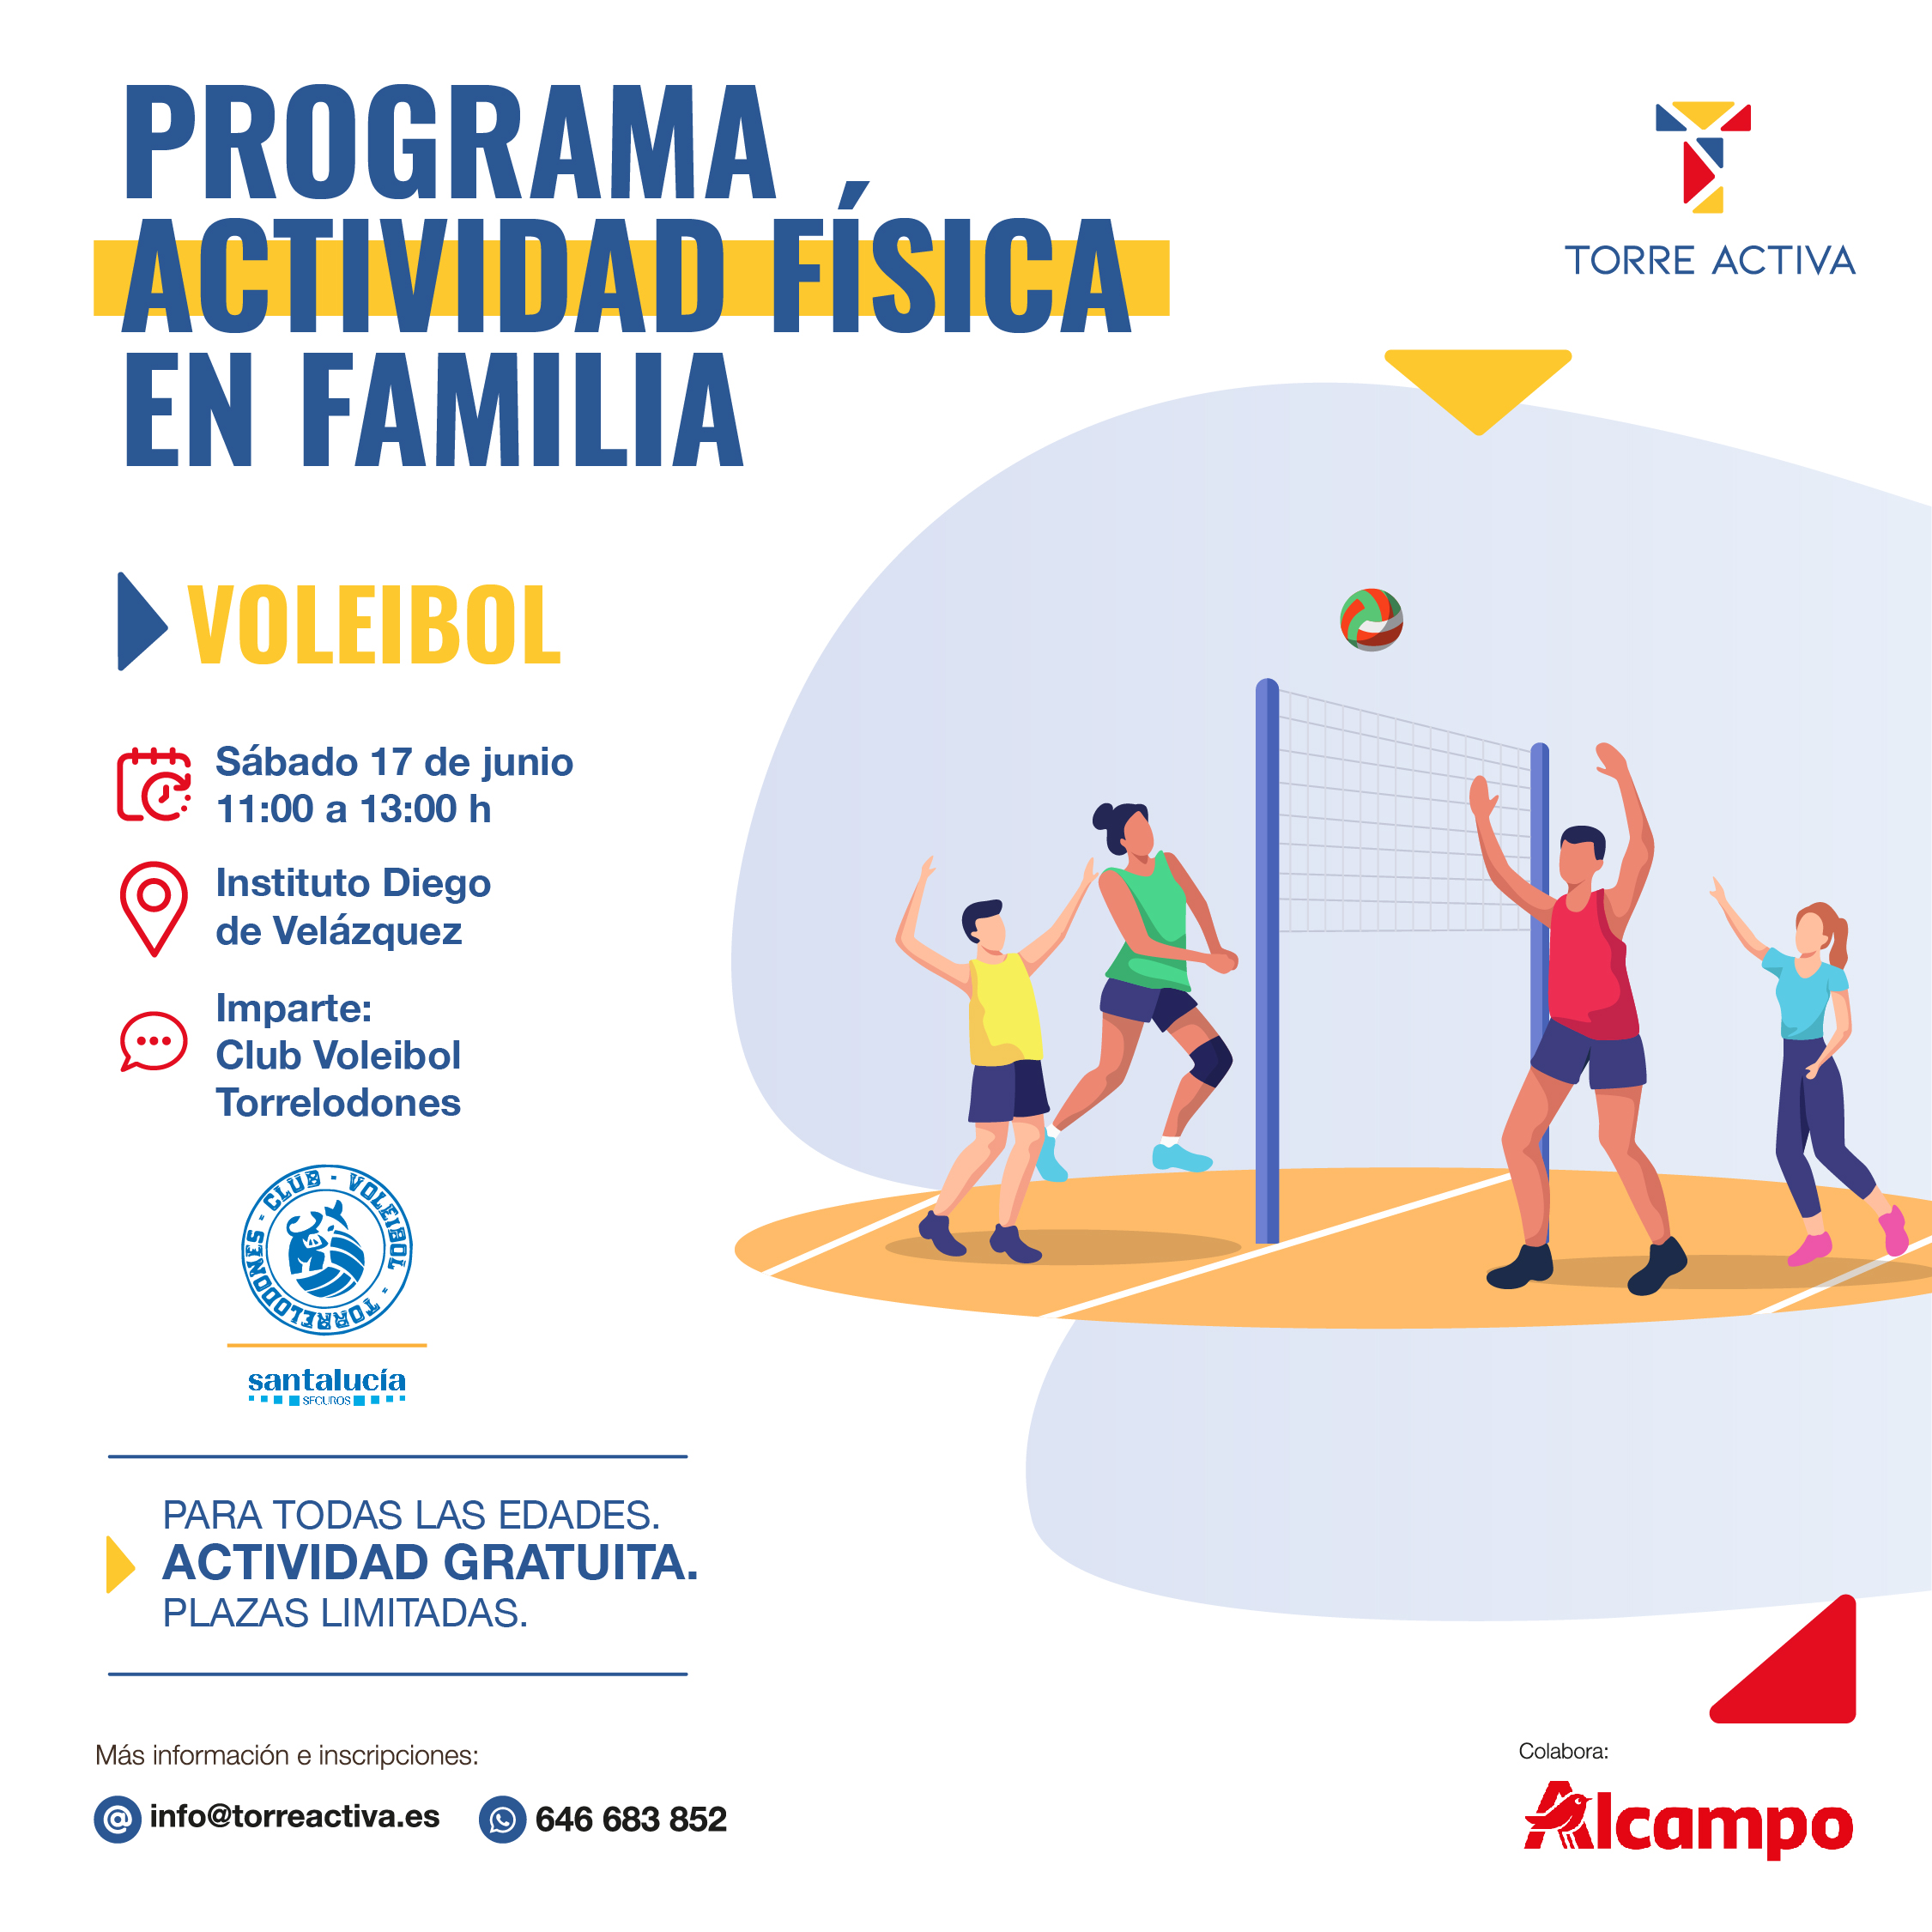 Nueva actividad del Programa Actividad Física en Familia: Voleibol